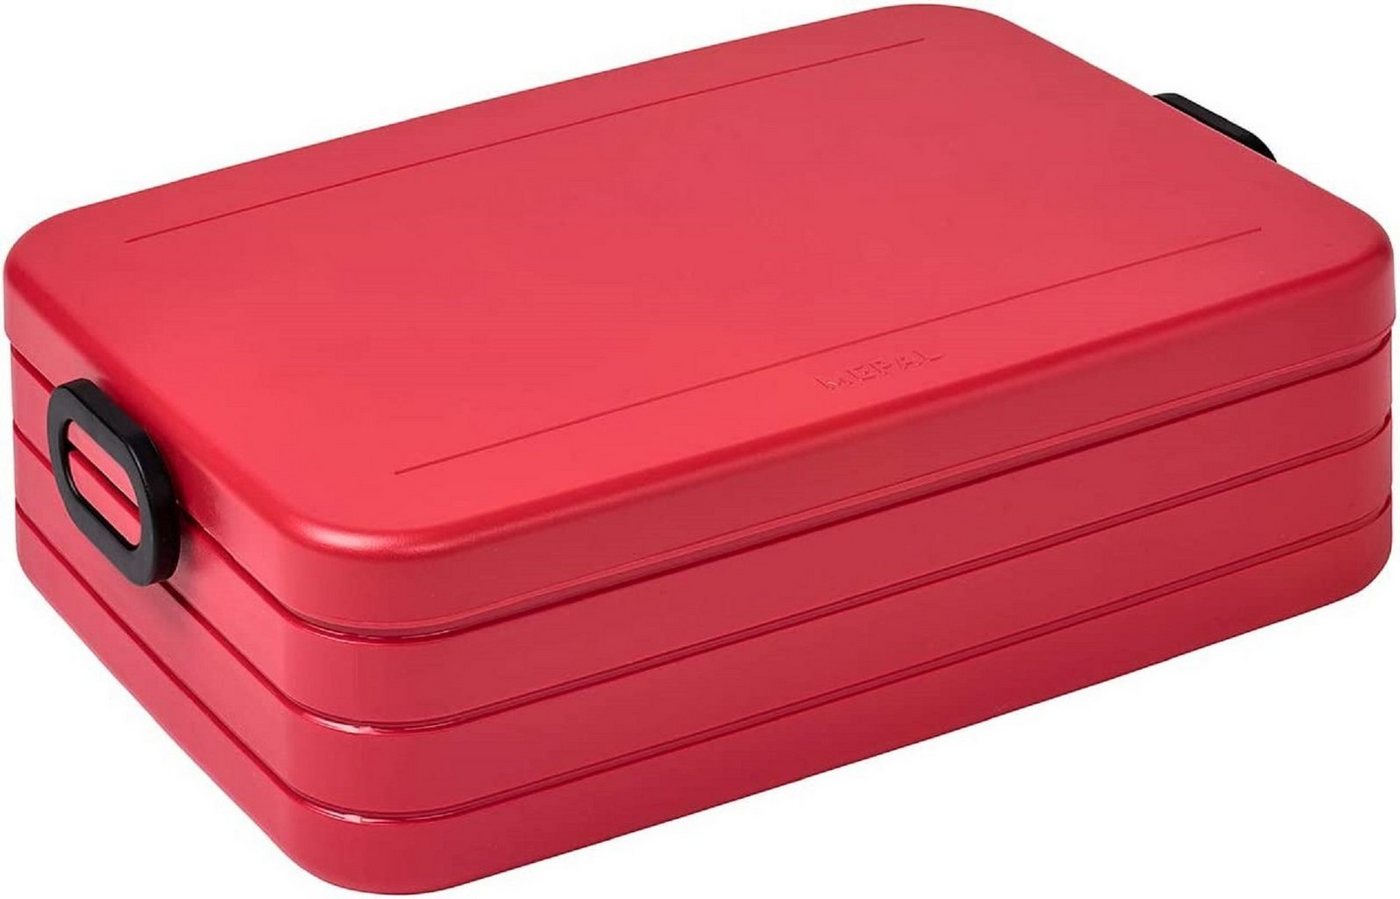 Mepal Lunchbox Take a Break Large Nordic red– 1500 ml Inhalt – Lunchbox mit Trennwand von Mepal